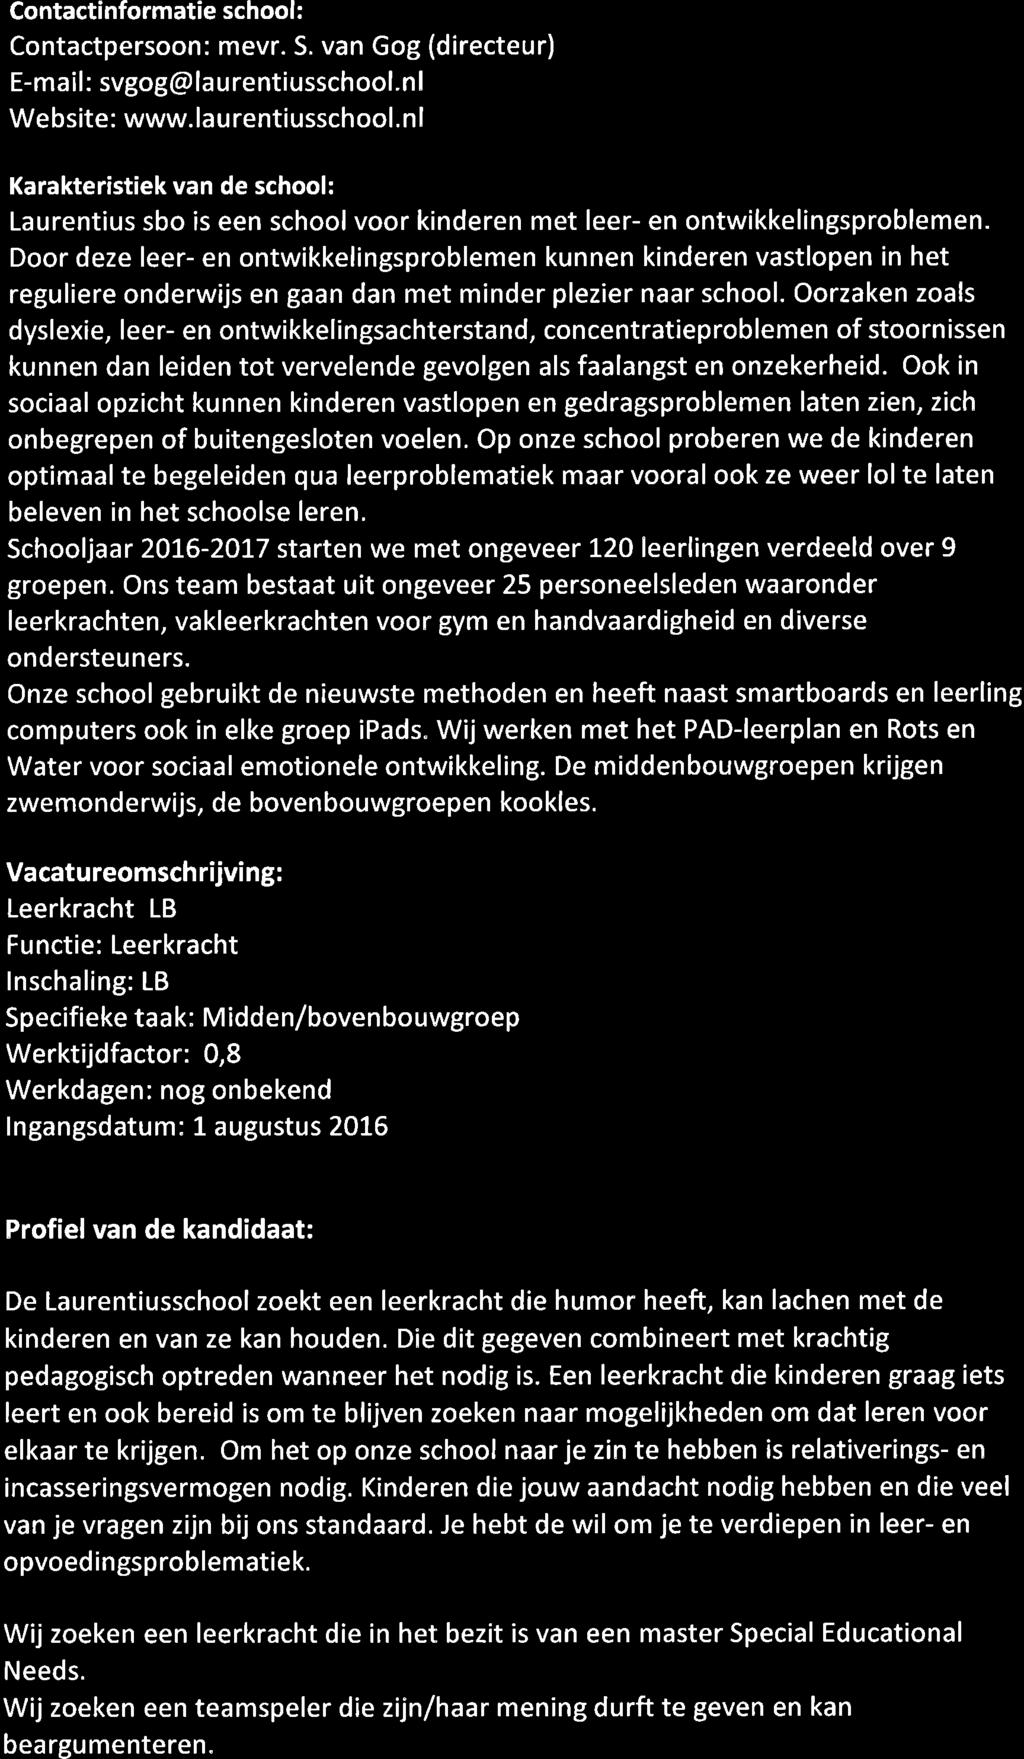 Contactinformatie school: Contactpersoon: mevr. S. van Gog (directeur) E-mail: svgog@laurentiusschool.nl Website: www. lau rentiusschool.